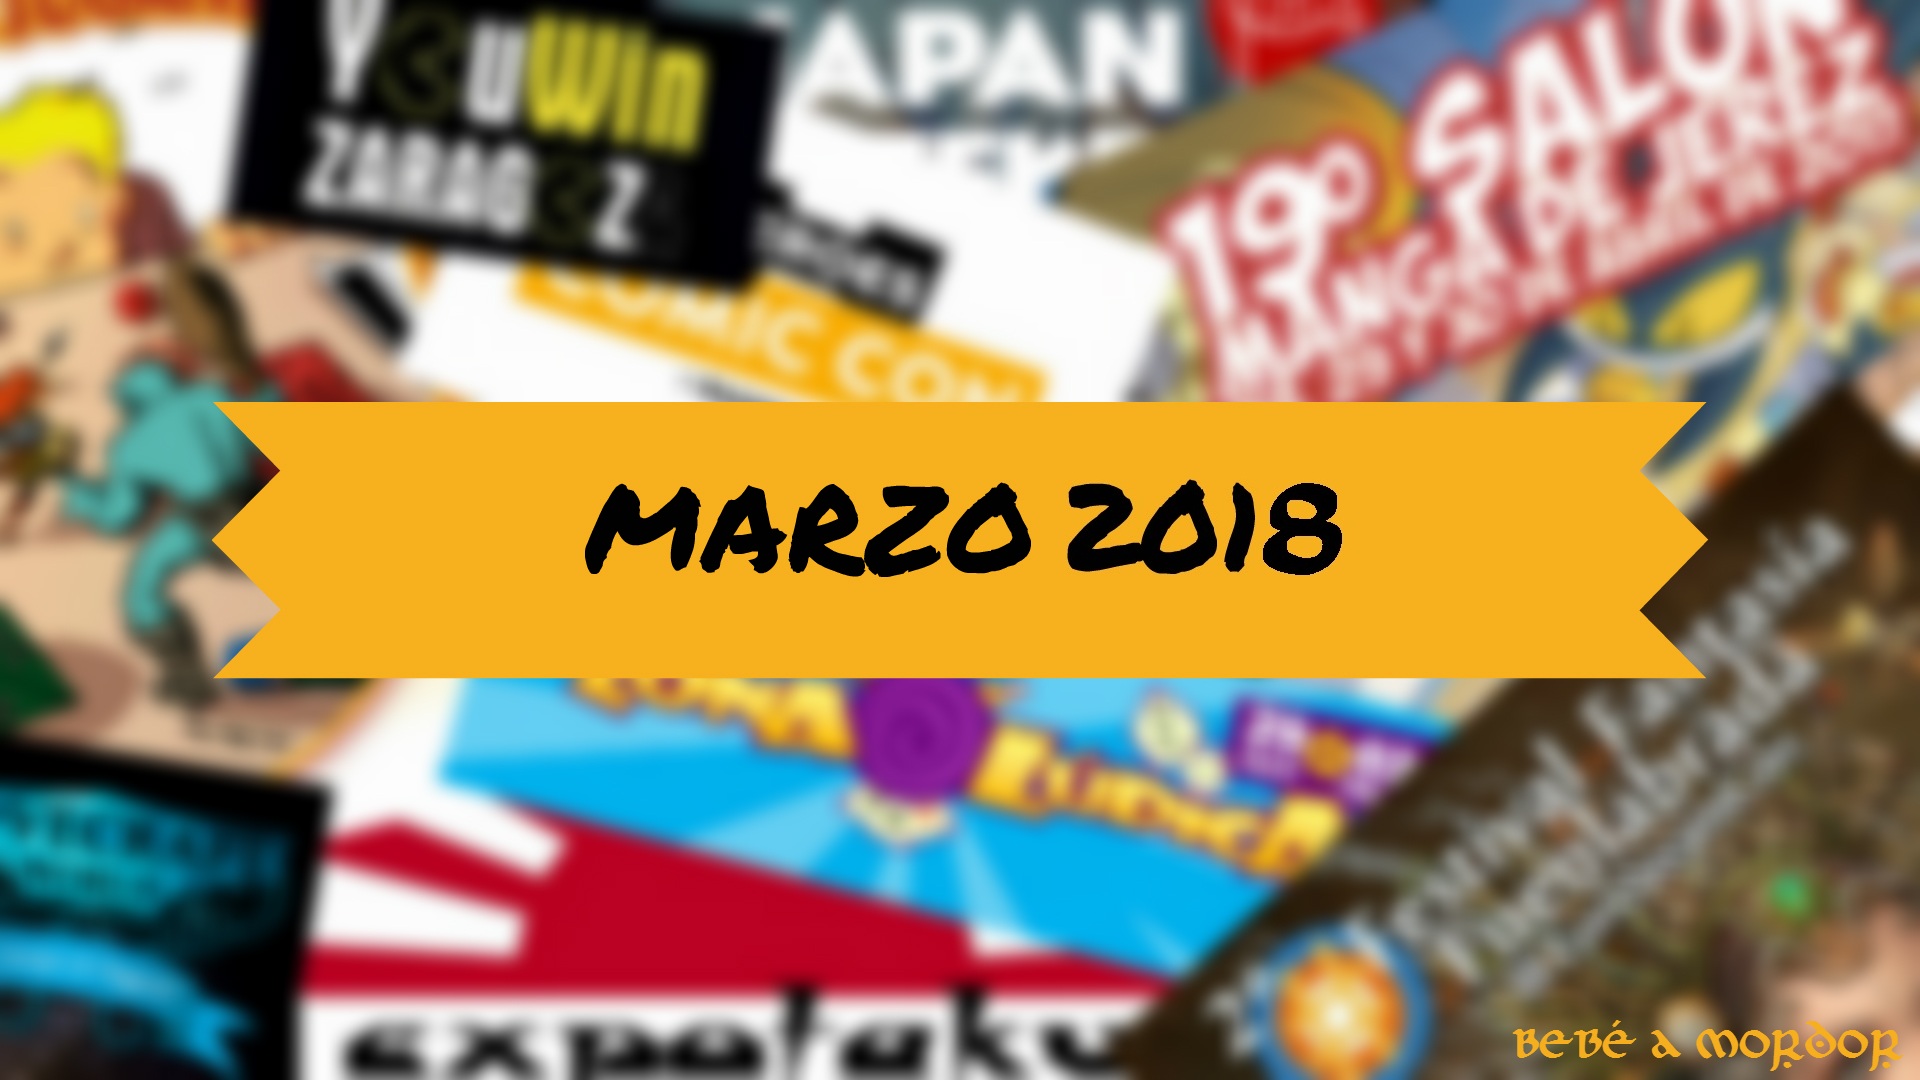 Calendario y agenda eventos frikis marzo 2018